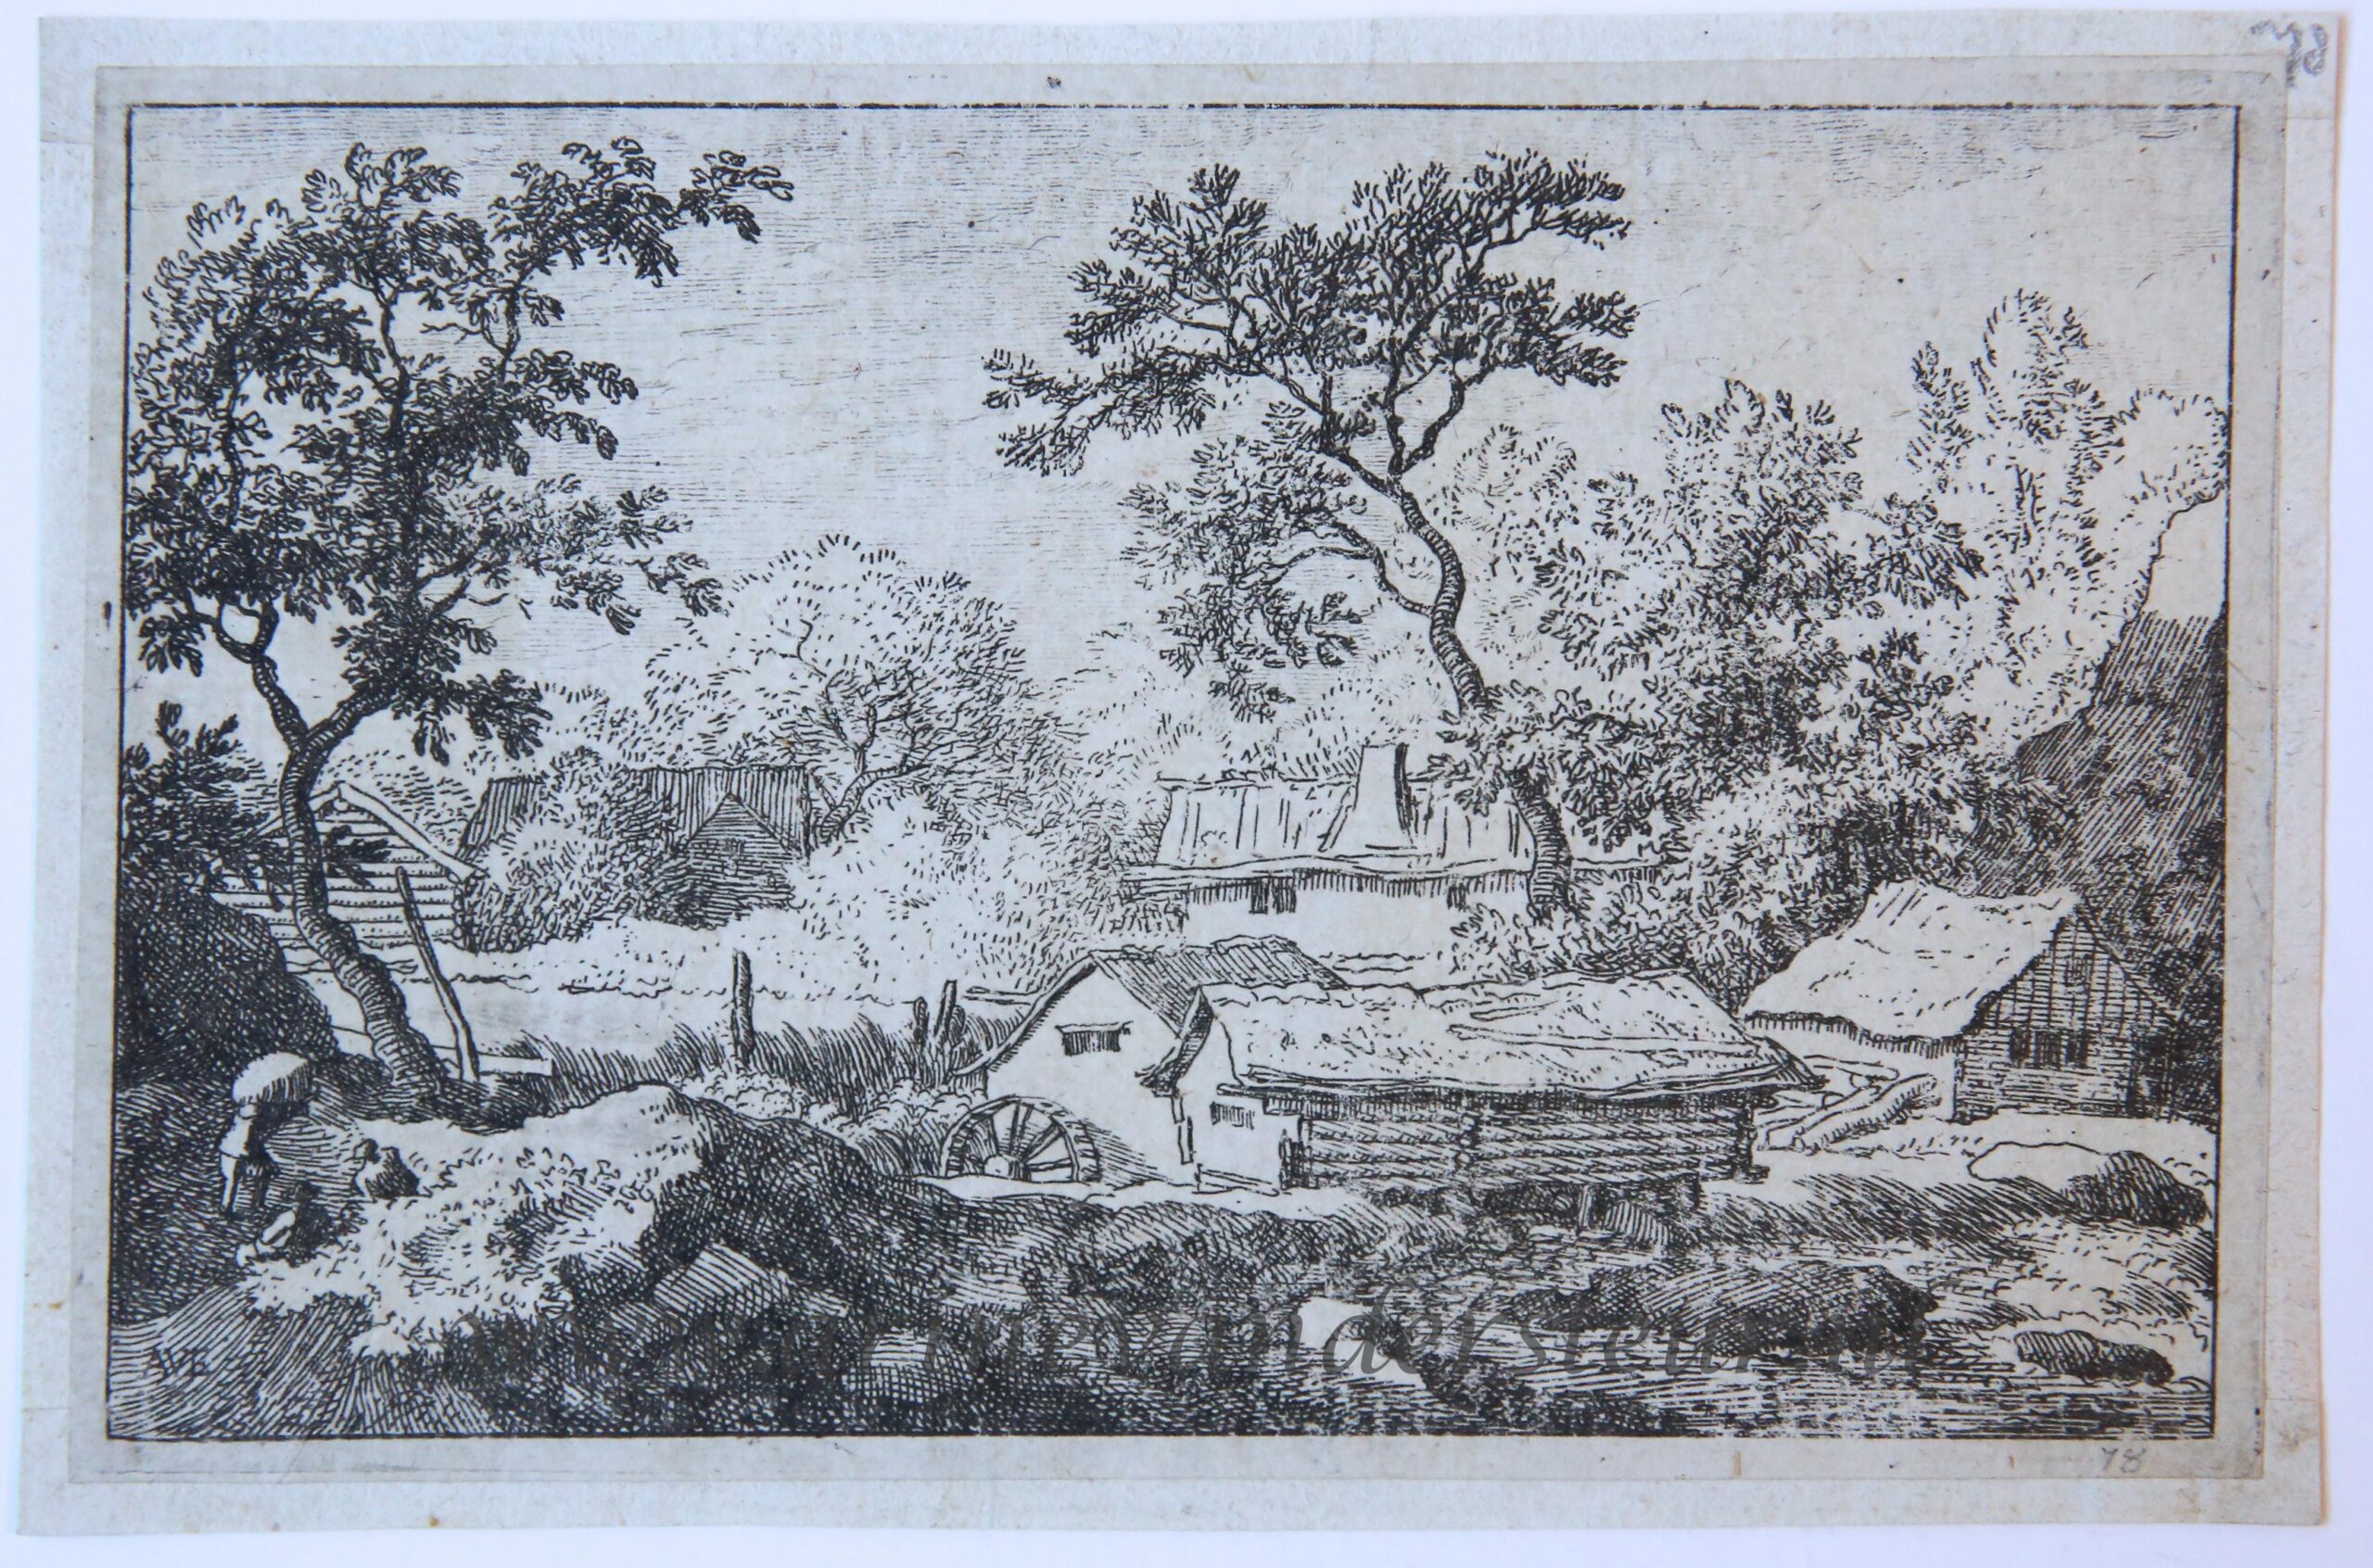 [Antique landscape print, etching] The water-mill near the waterfall/De watermolen bij de waterval, published 1631-1675.